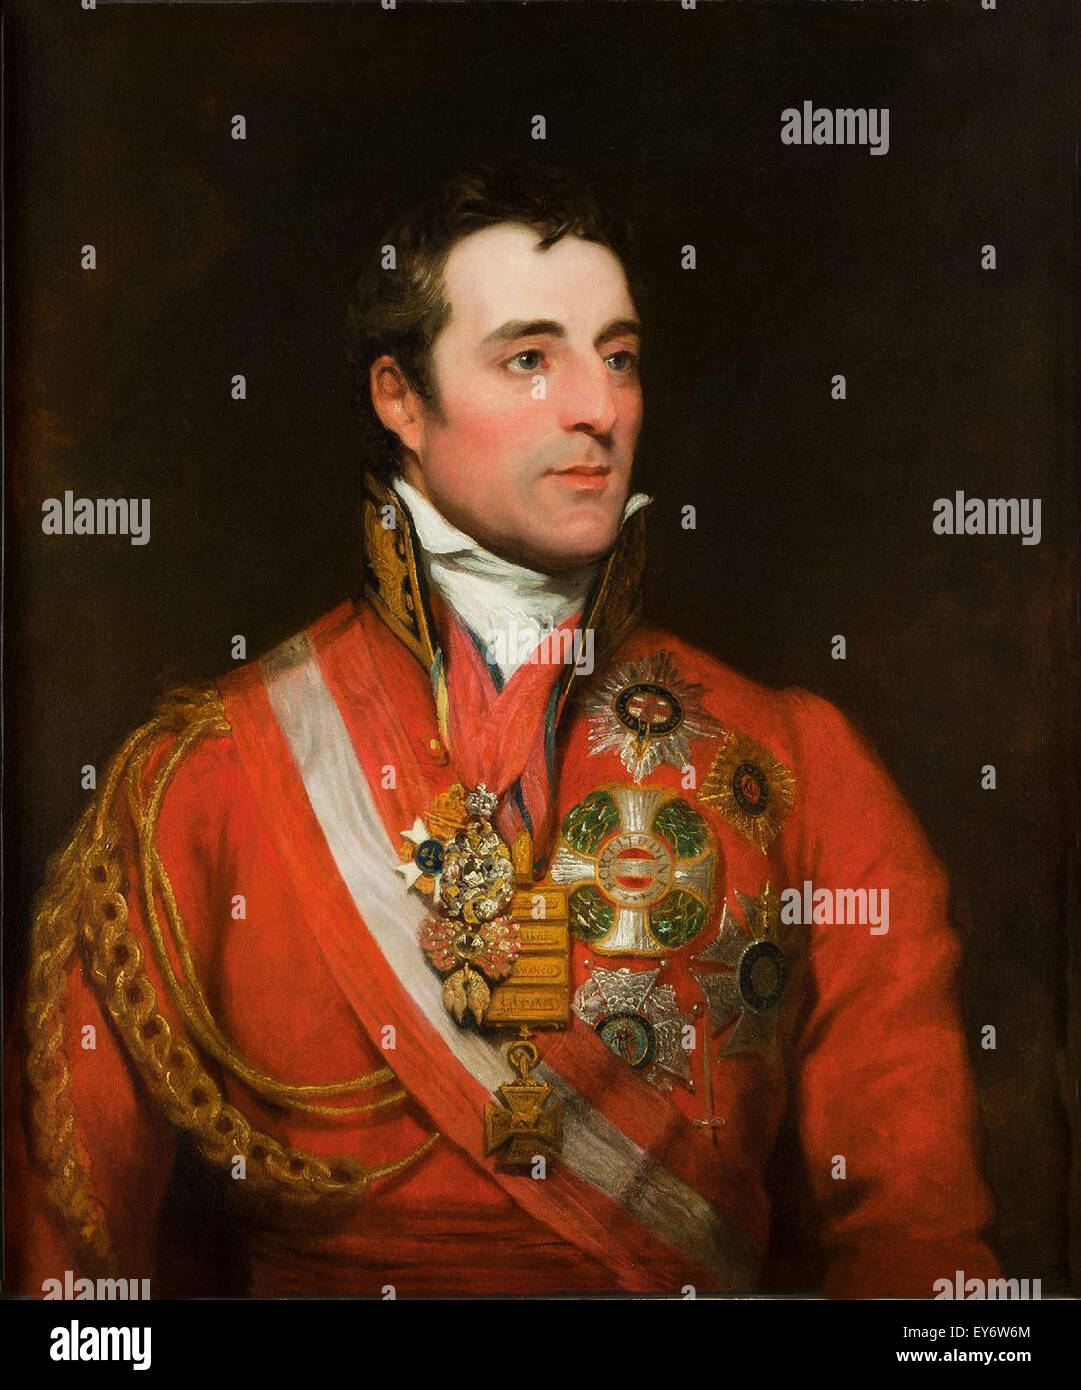 Le Maréchal Arthur Wellesley le 1er duc de Wellington portant l'uniforme de maréchal de champ avec l'ordre de la Toison d'or, étoile de l'ordre de la Jarretière et autres décorations, par Thomas Phillips. Banque D'Images